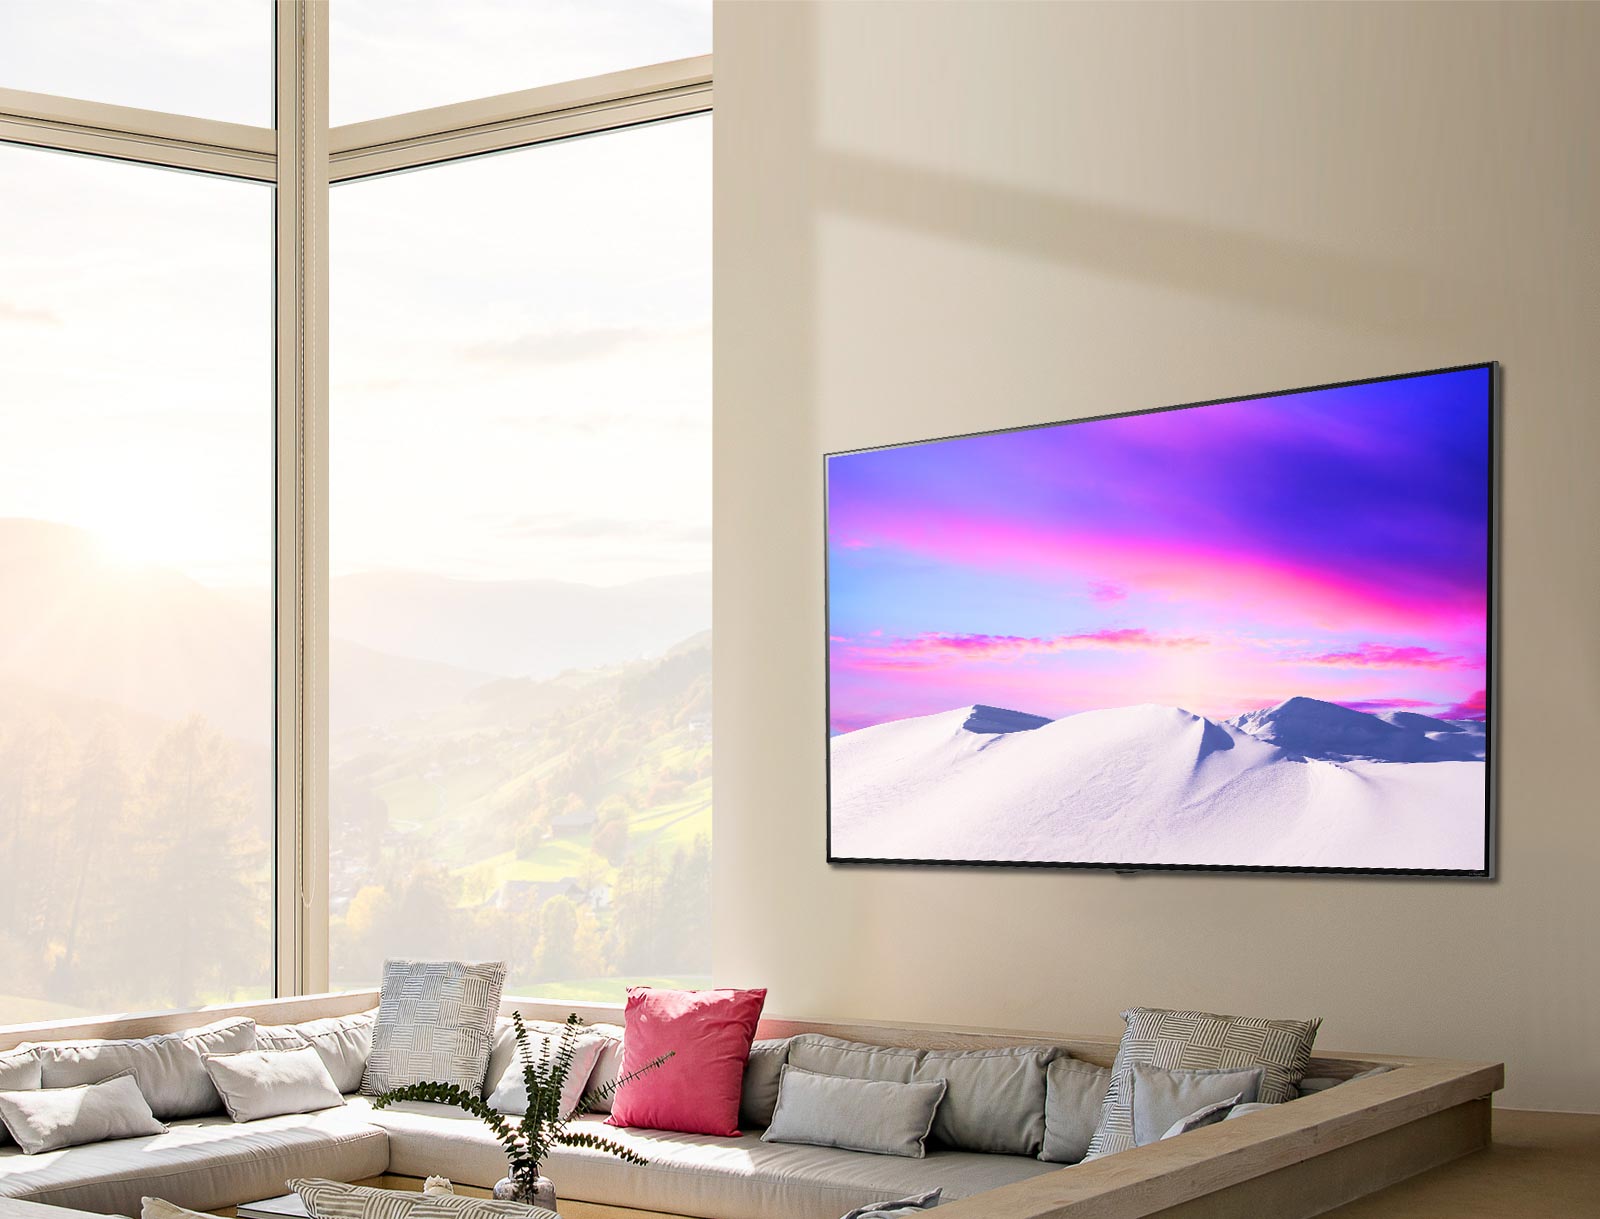 Prizor velikega in tankega televizorja LG NanoCell, ki visi naravnost ob steni.